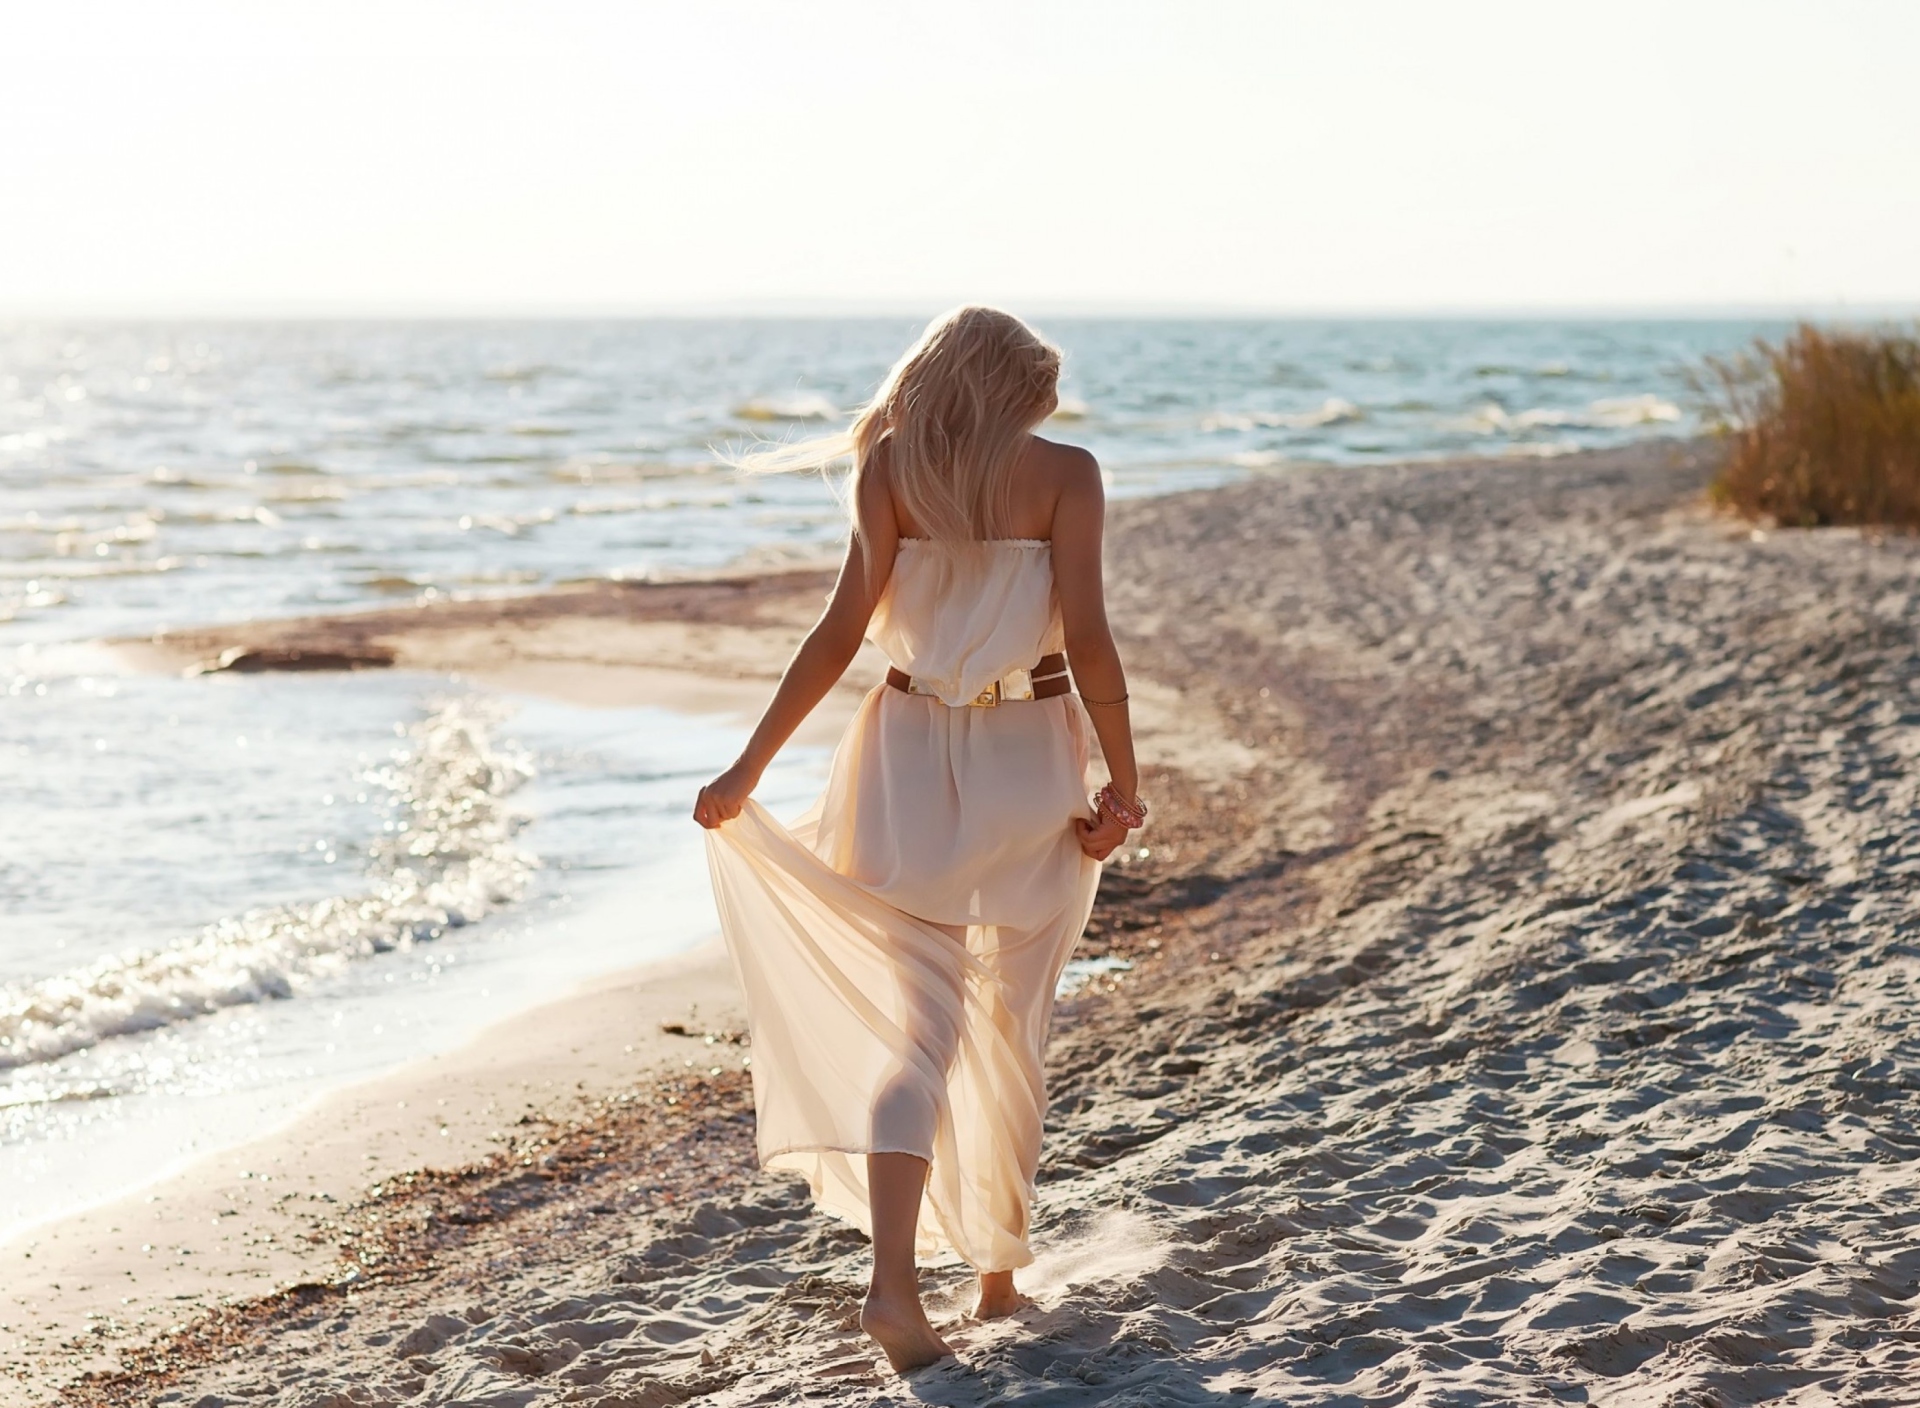 Обои Girl In White Dress On Beach 1920x1408